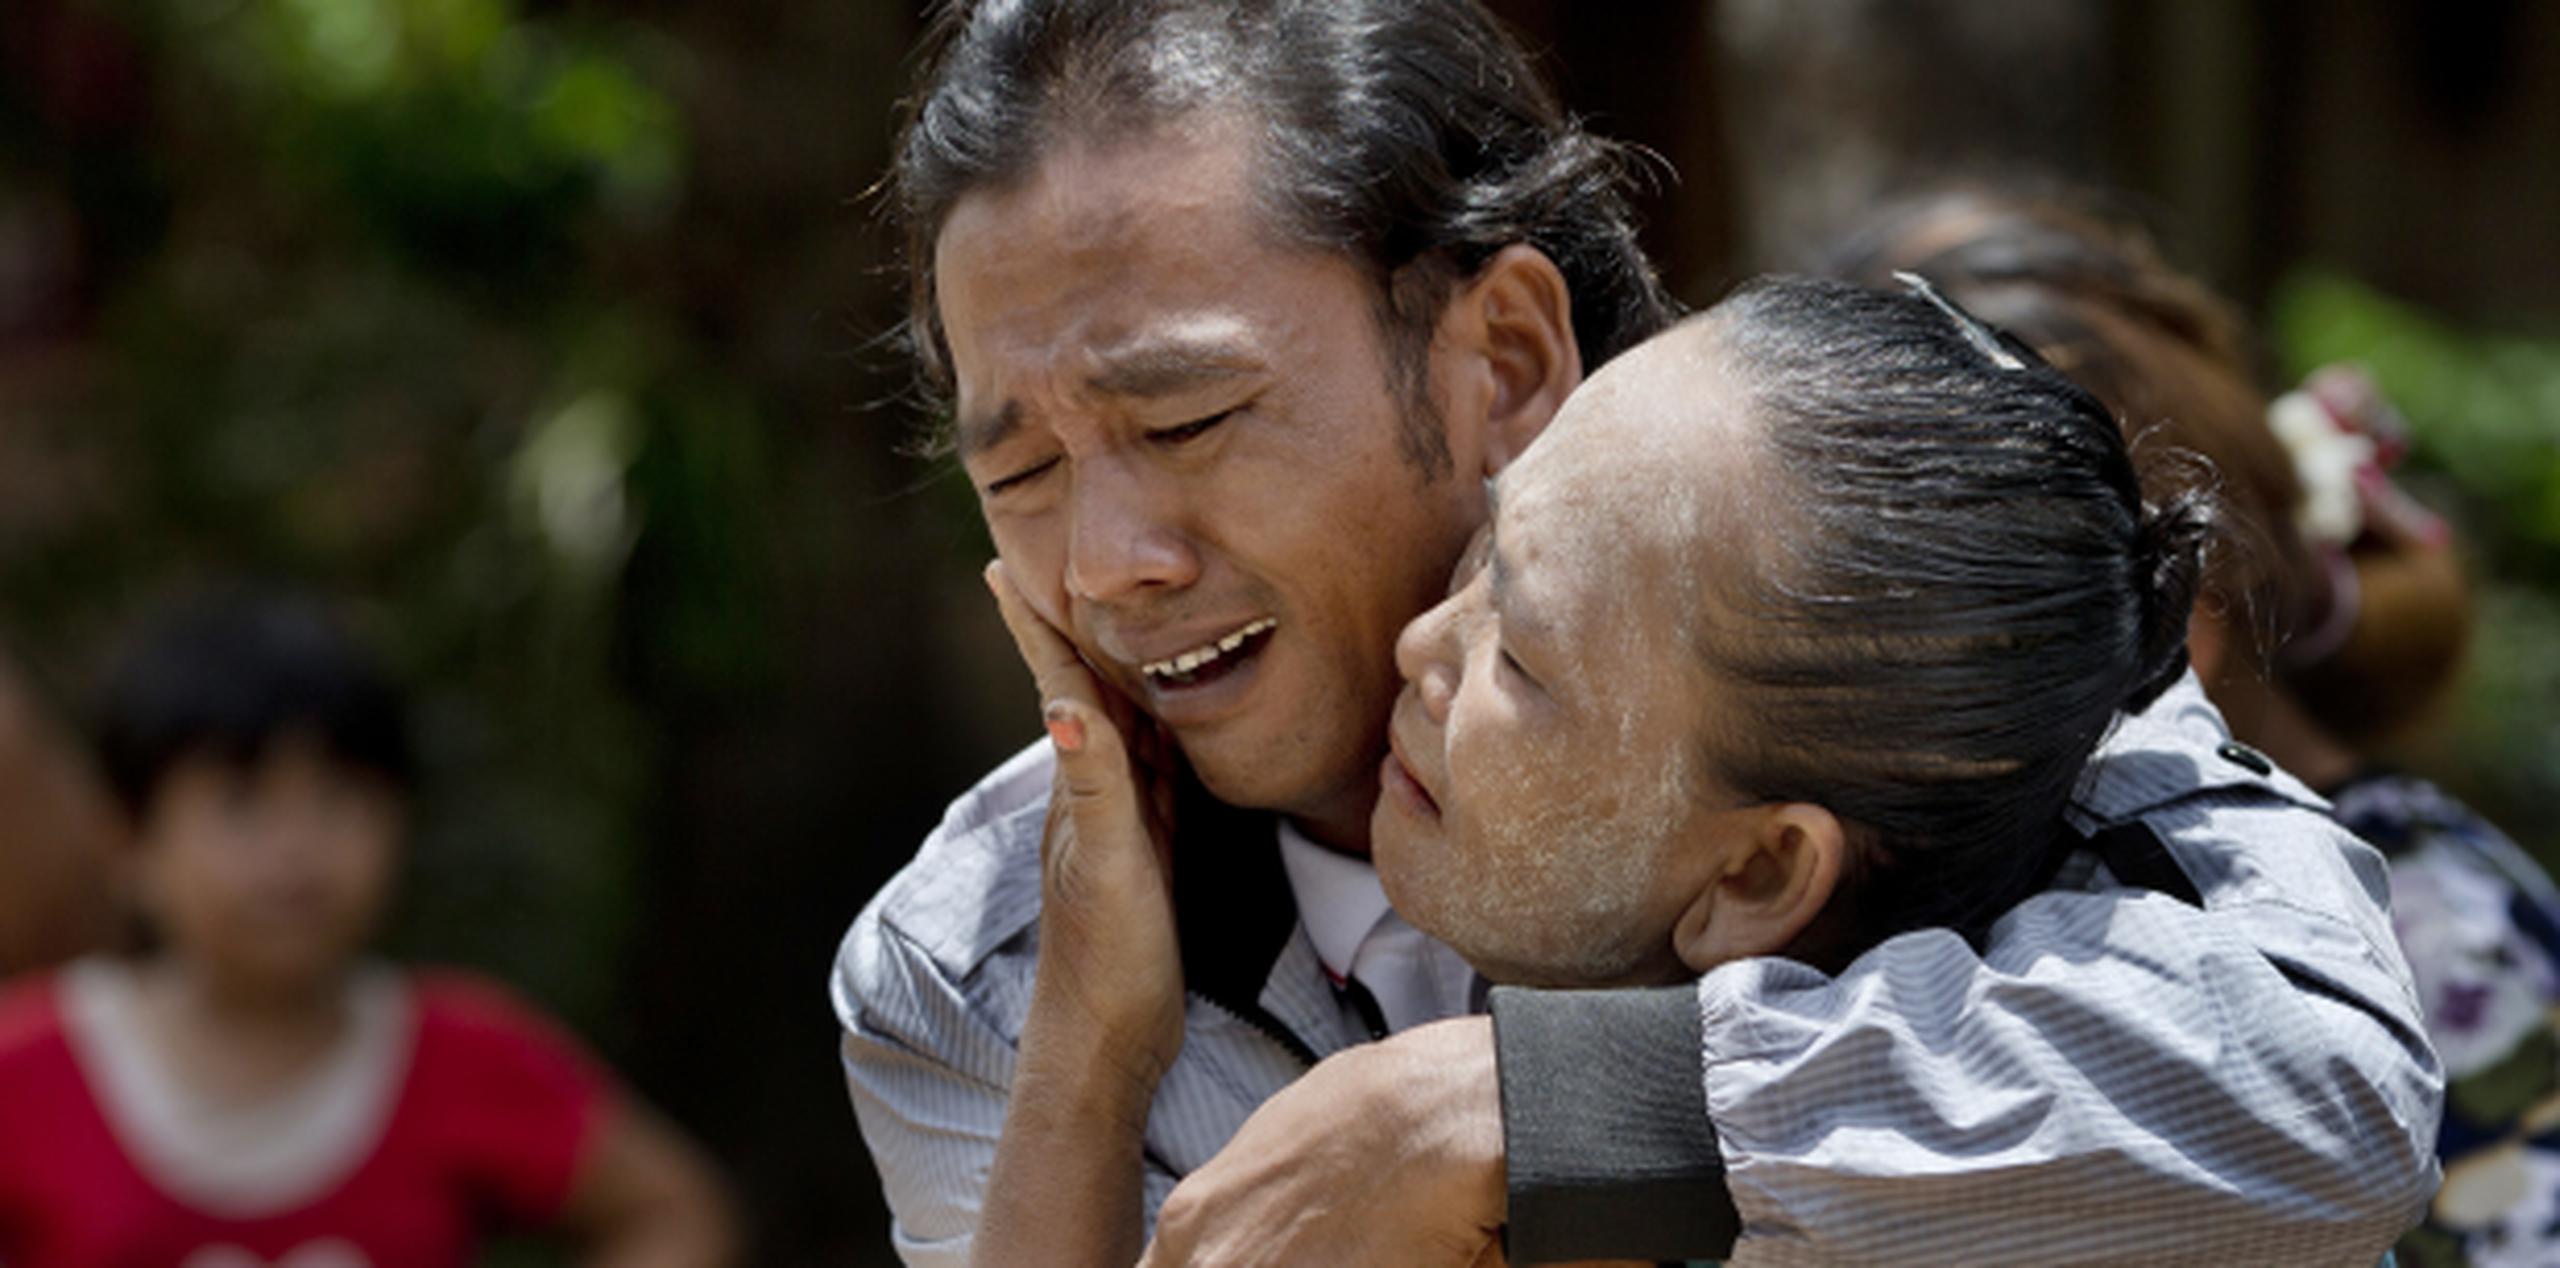 En mayo de 2015, Myint se derrumbó en brazos de su madre tras su liberación, poniendo fin a 22 años de separación luego de ser llevado a Indonesia y de ser golpeado casi hasta la muerte. (AP)